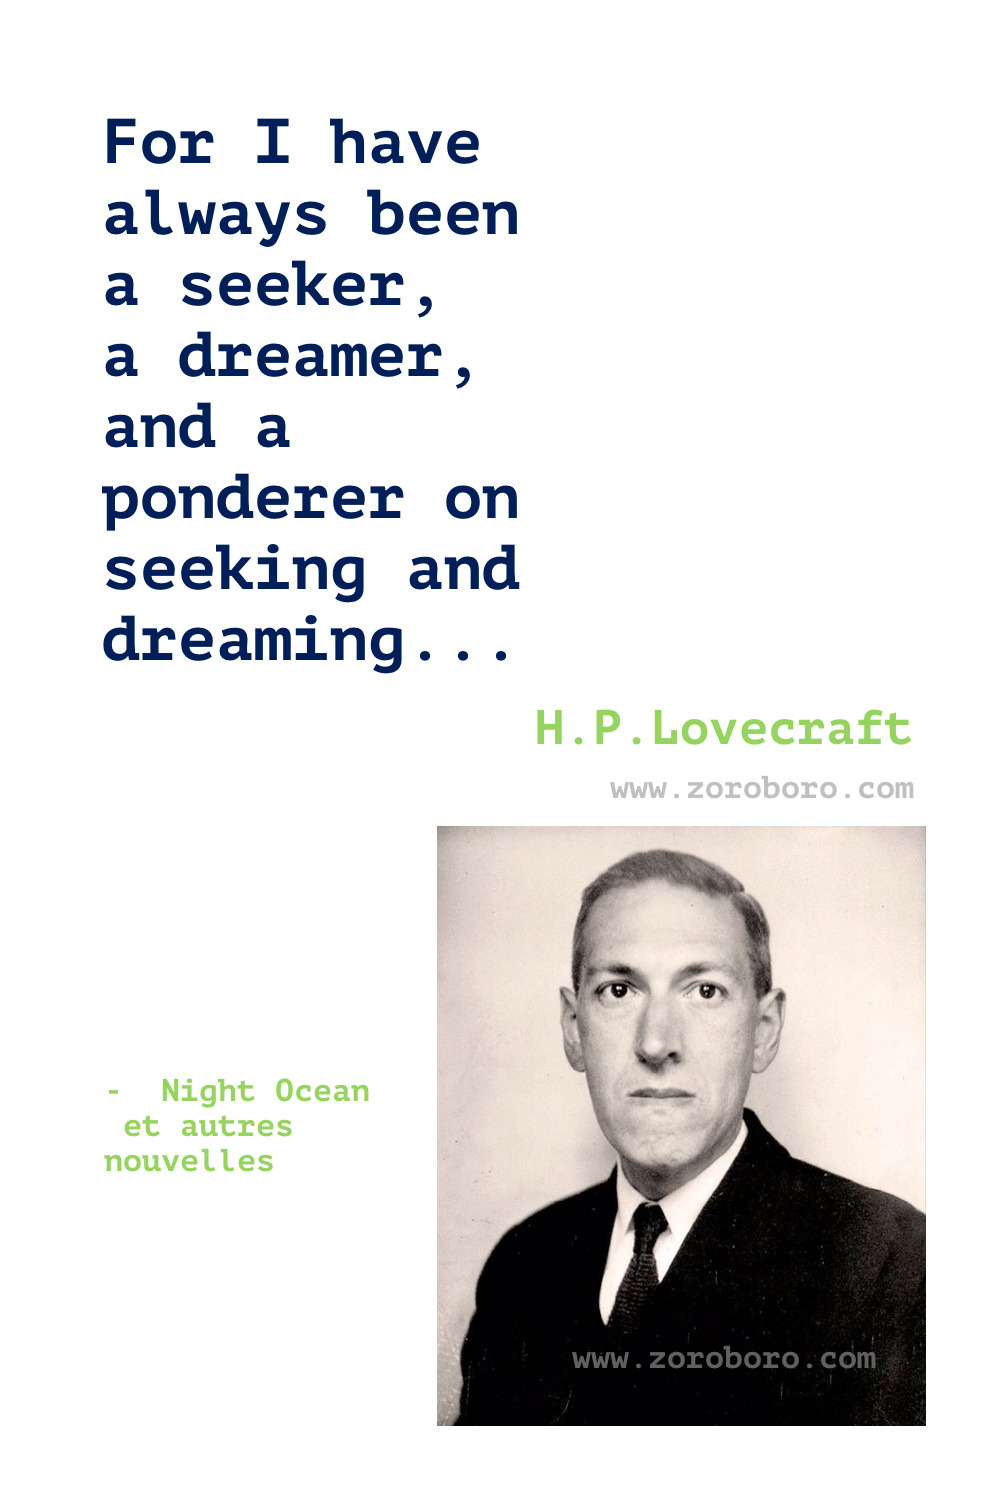 H. P. Lovecraft Quotes, H. P. Lovecraft Books Quotes, H. P. Lovecraft The Call of Cthulhu Quotes, H. P. Lovecraft Cat, Life & Madness Quotes, H. P. Lovecraft Quotes.